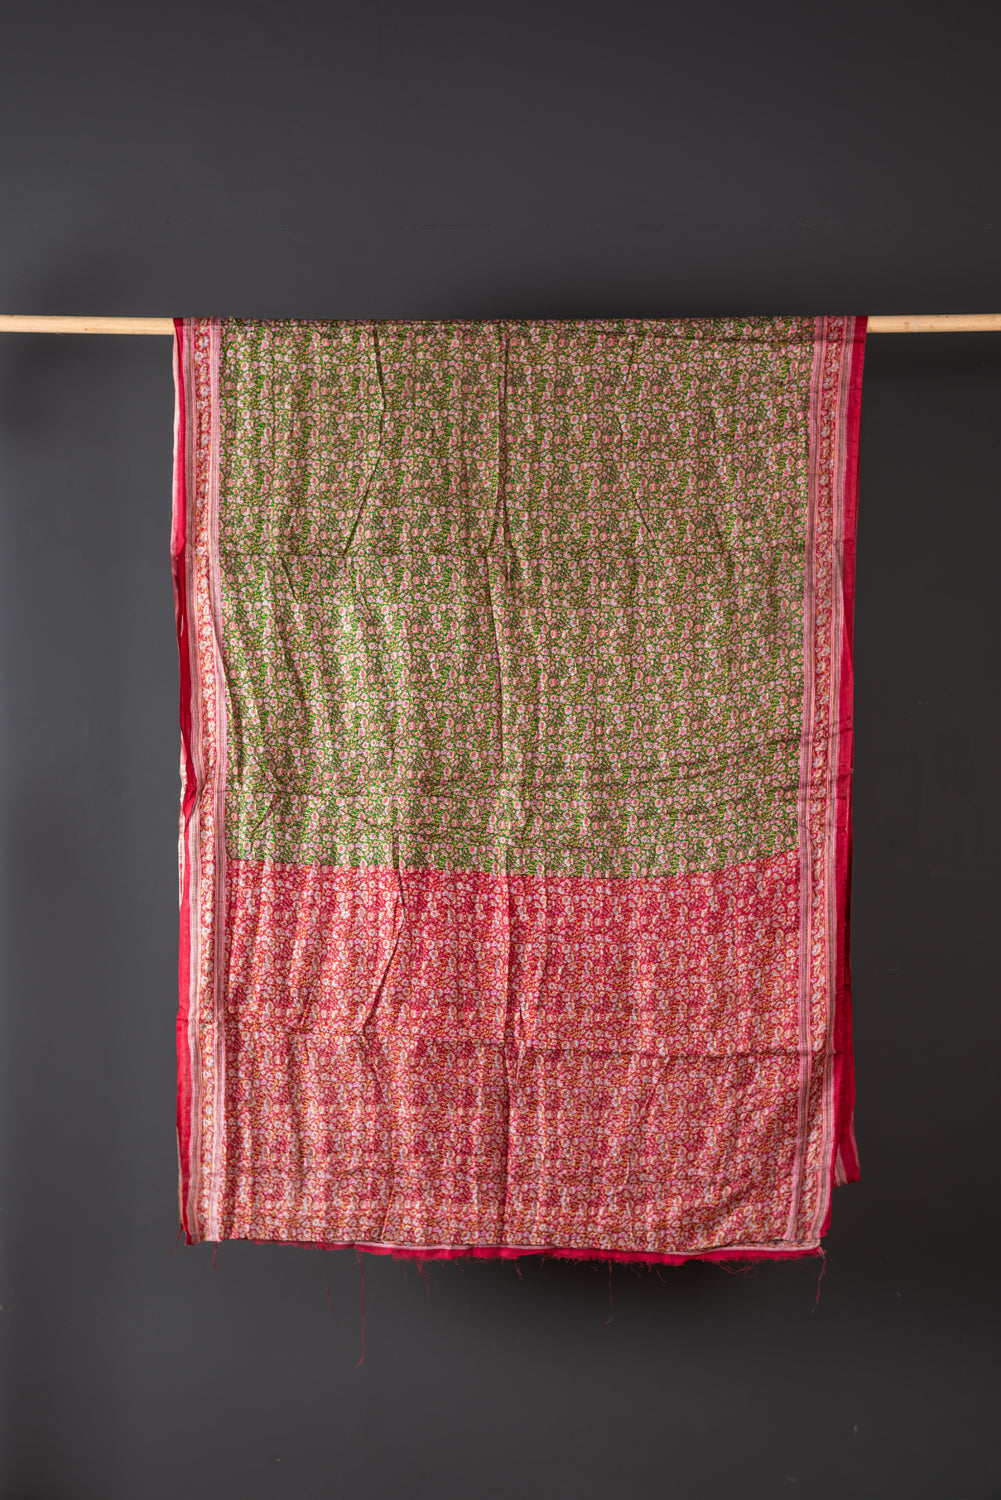 Vintage Silk Sari - 5 Metres Long - 1818